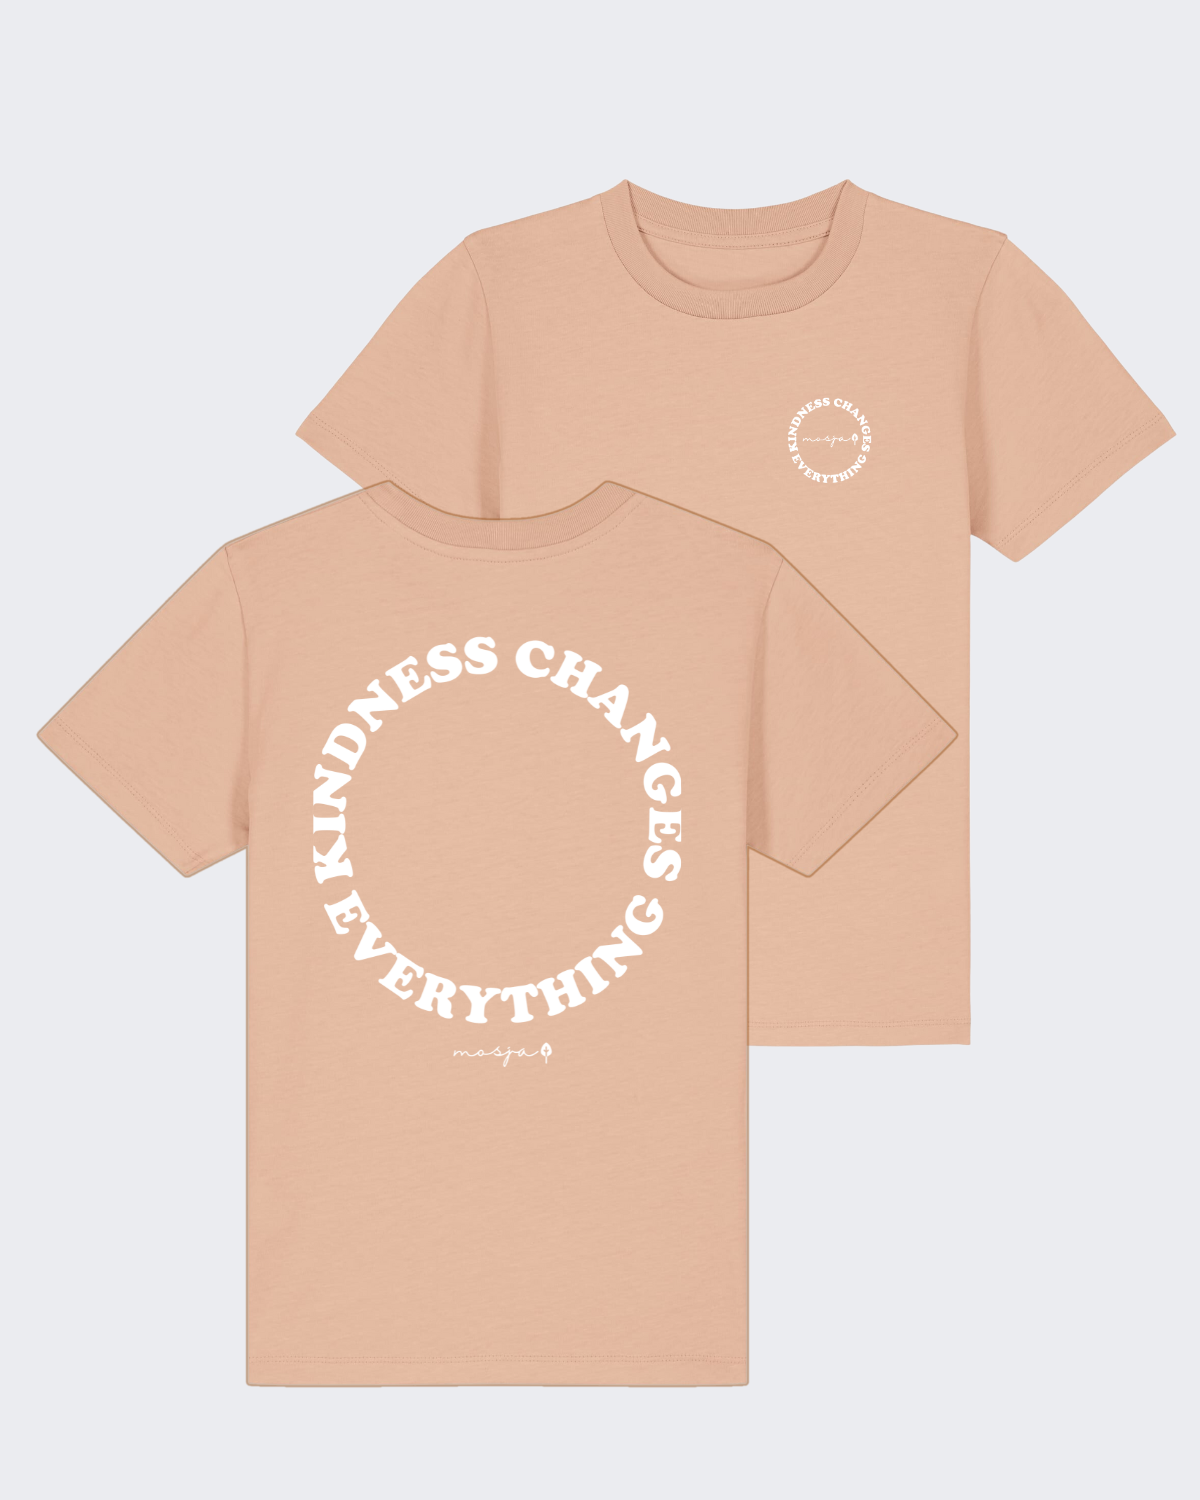 Kids-Shirt "Peach"